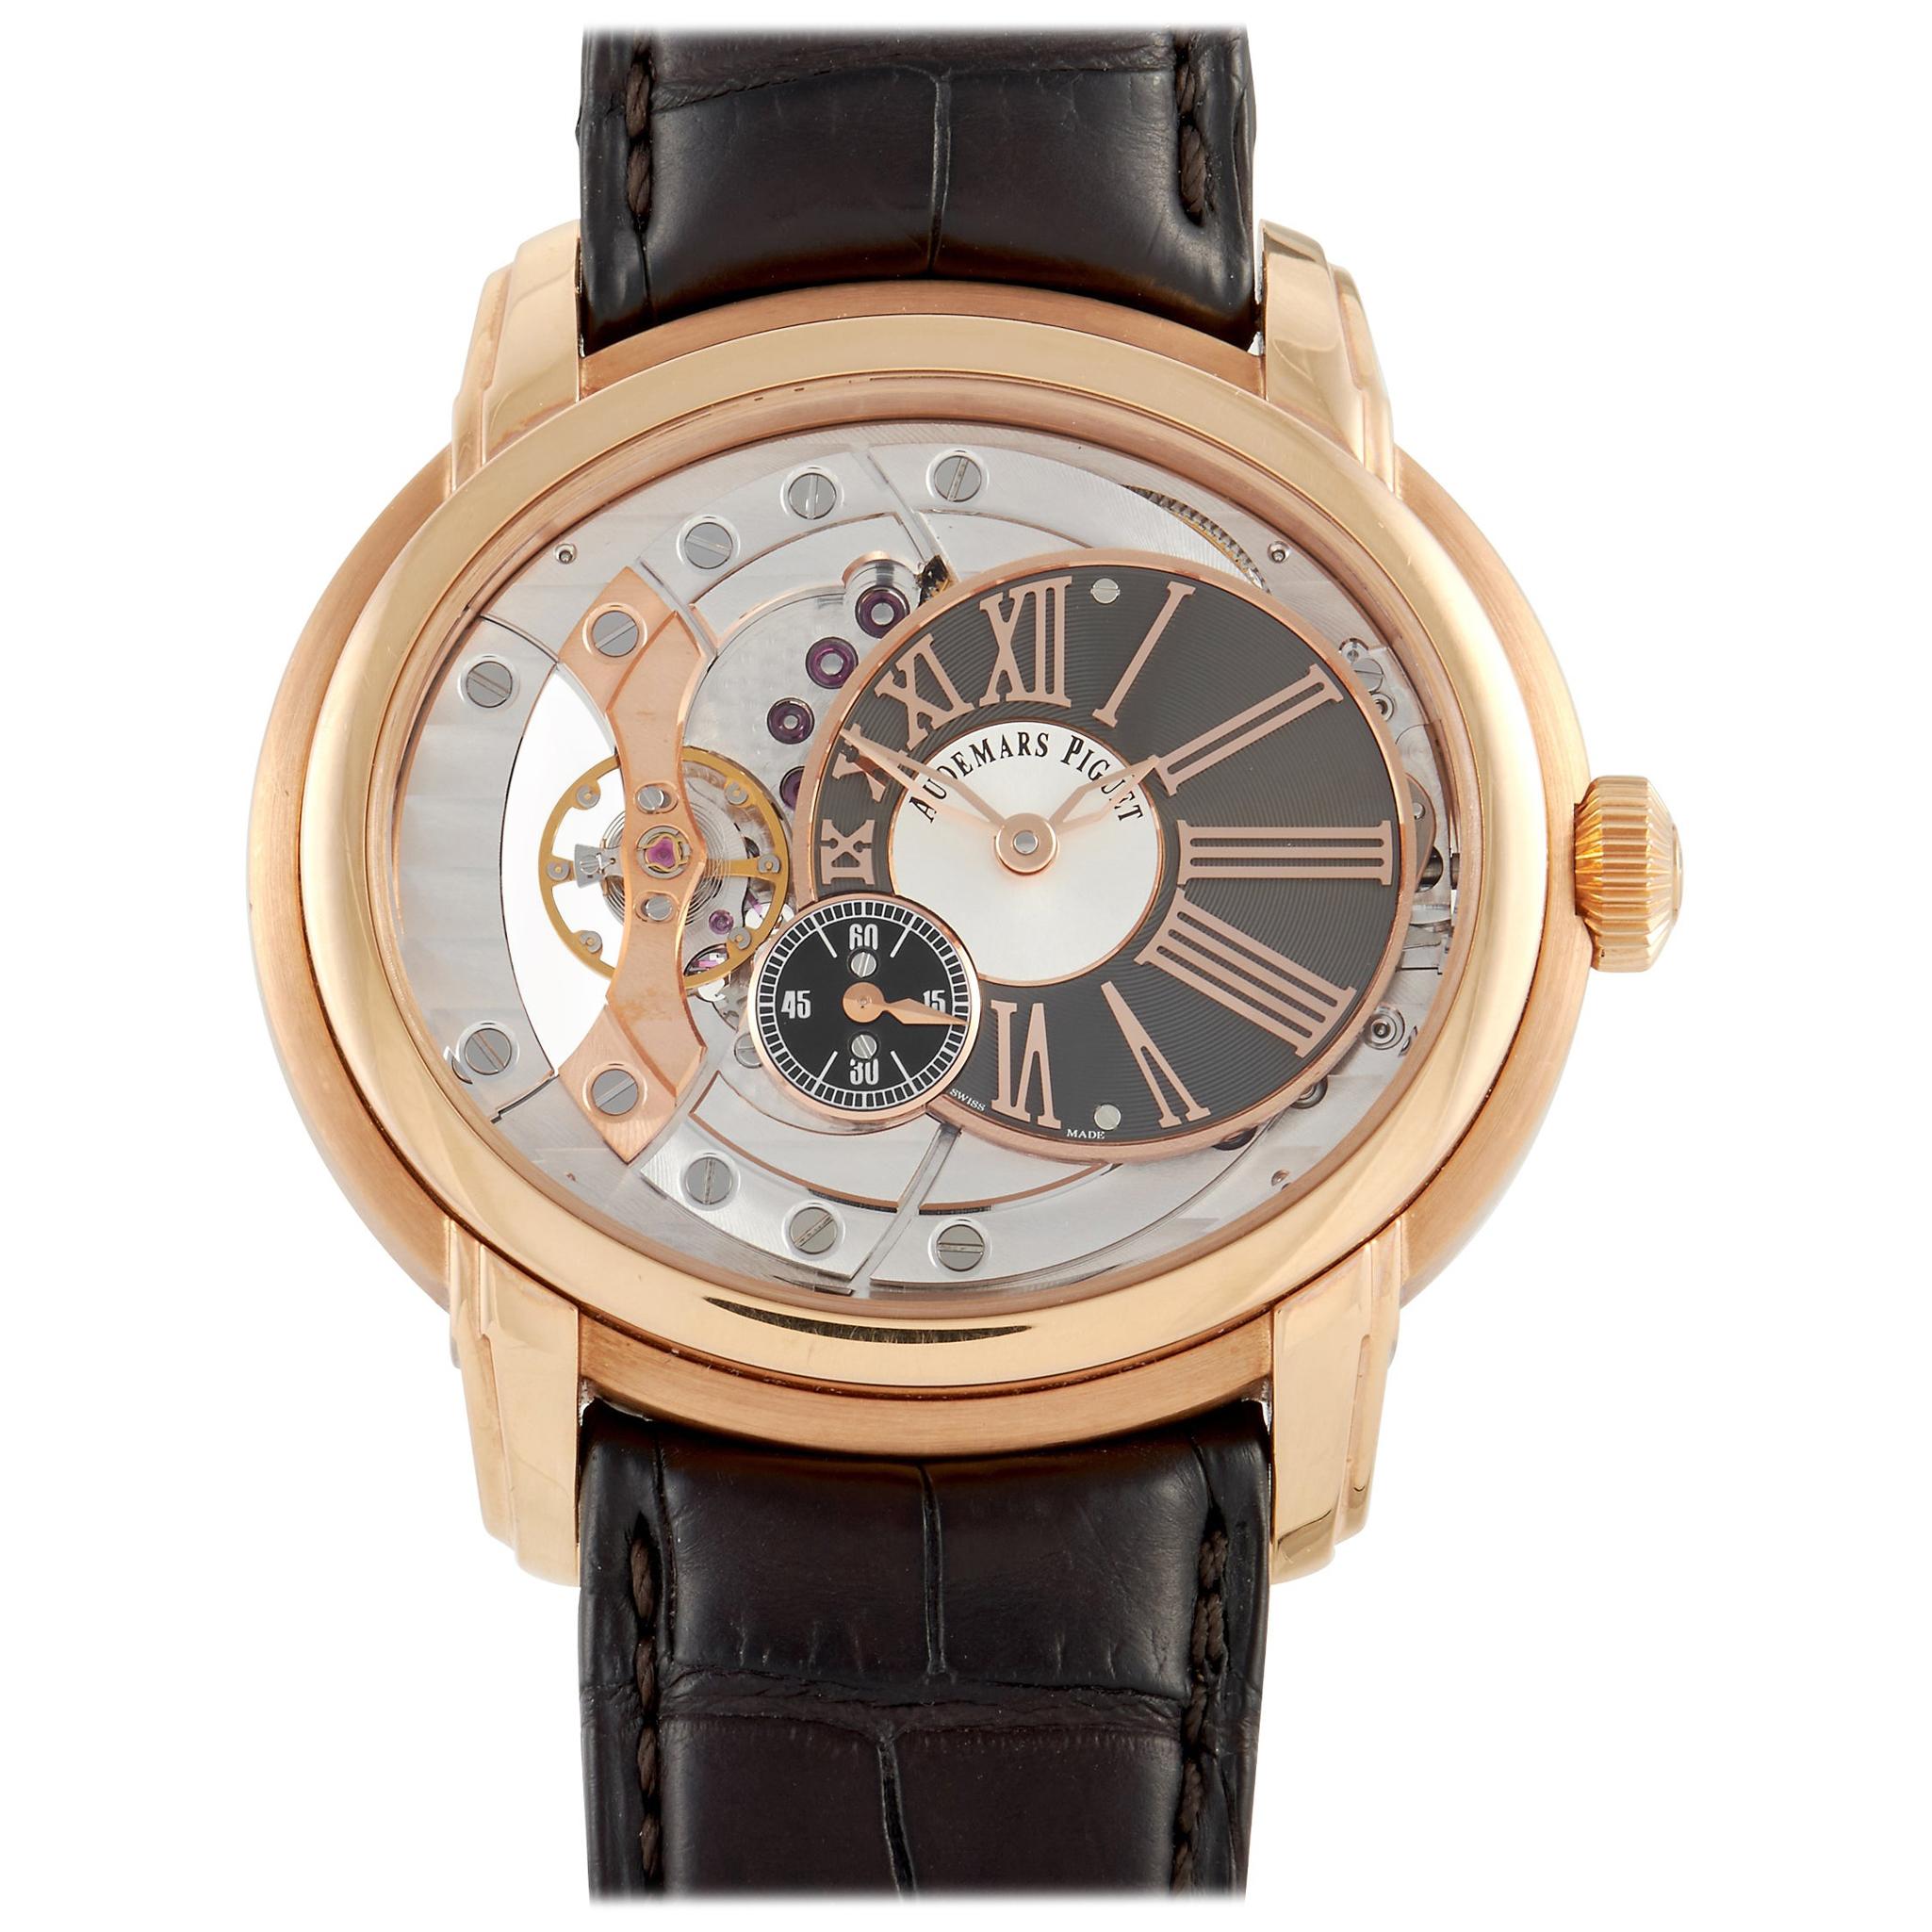 Audemars Piguet Millenary Rose Gold Watch 15350 OR.00.D093CR.01